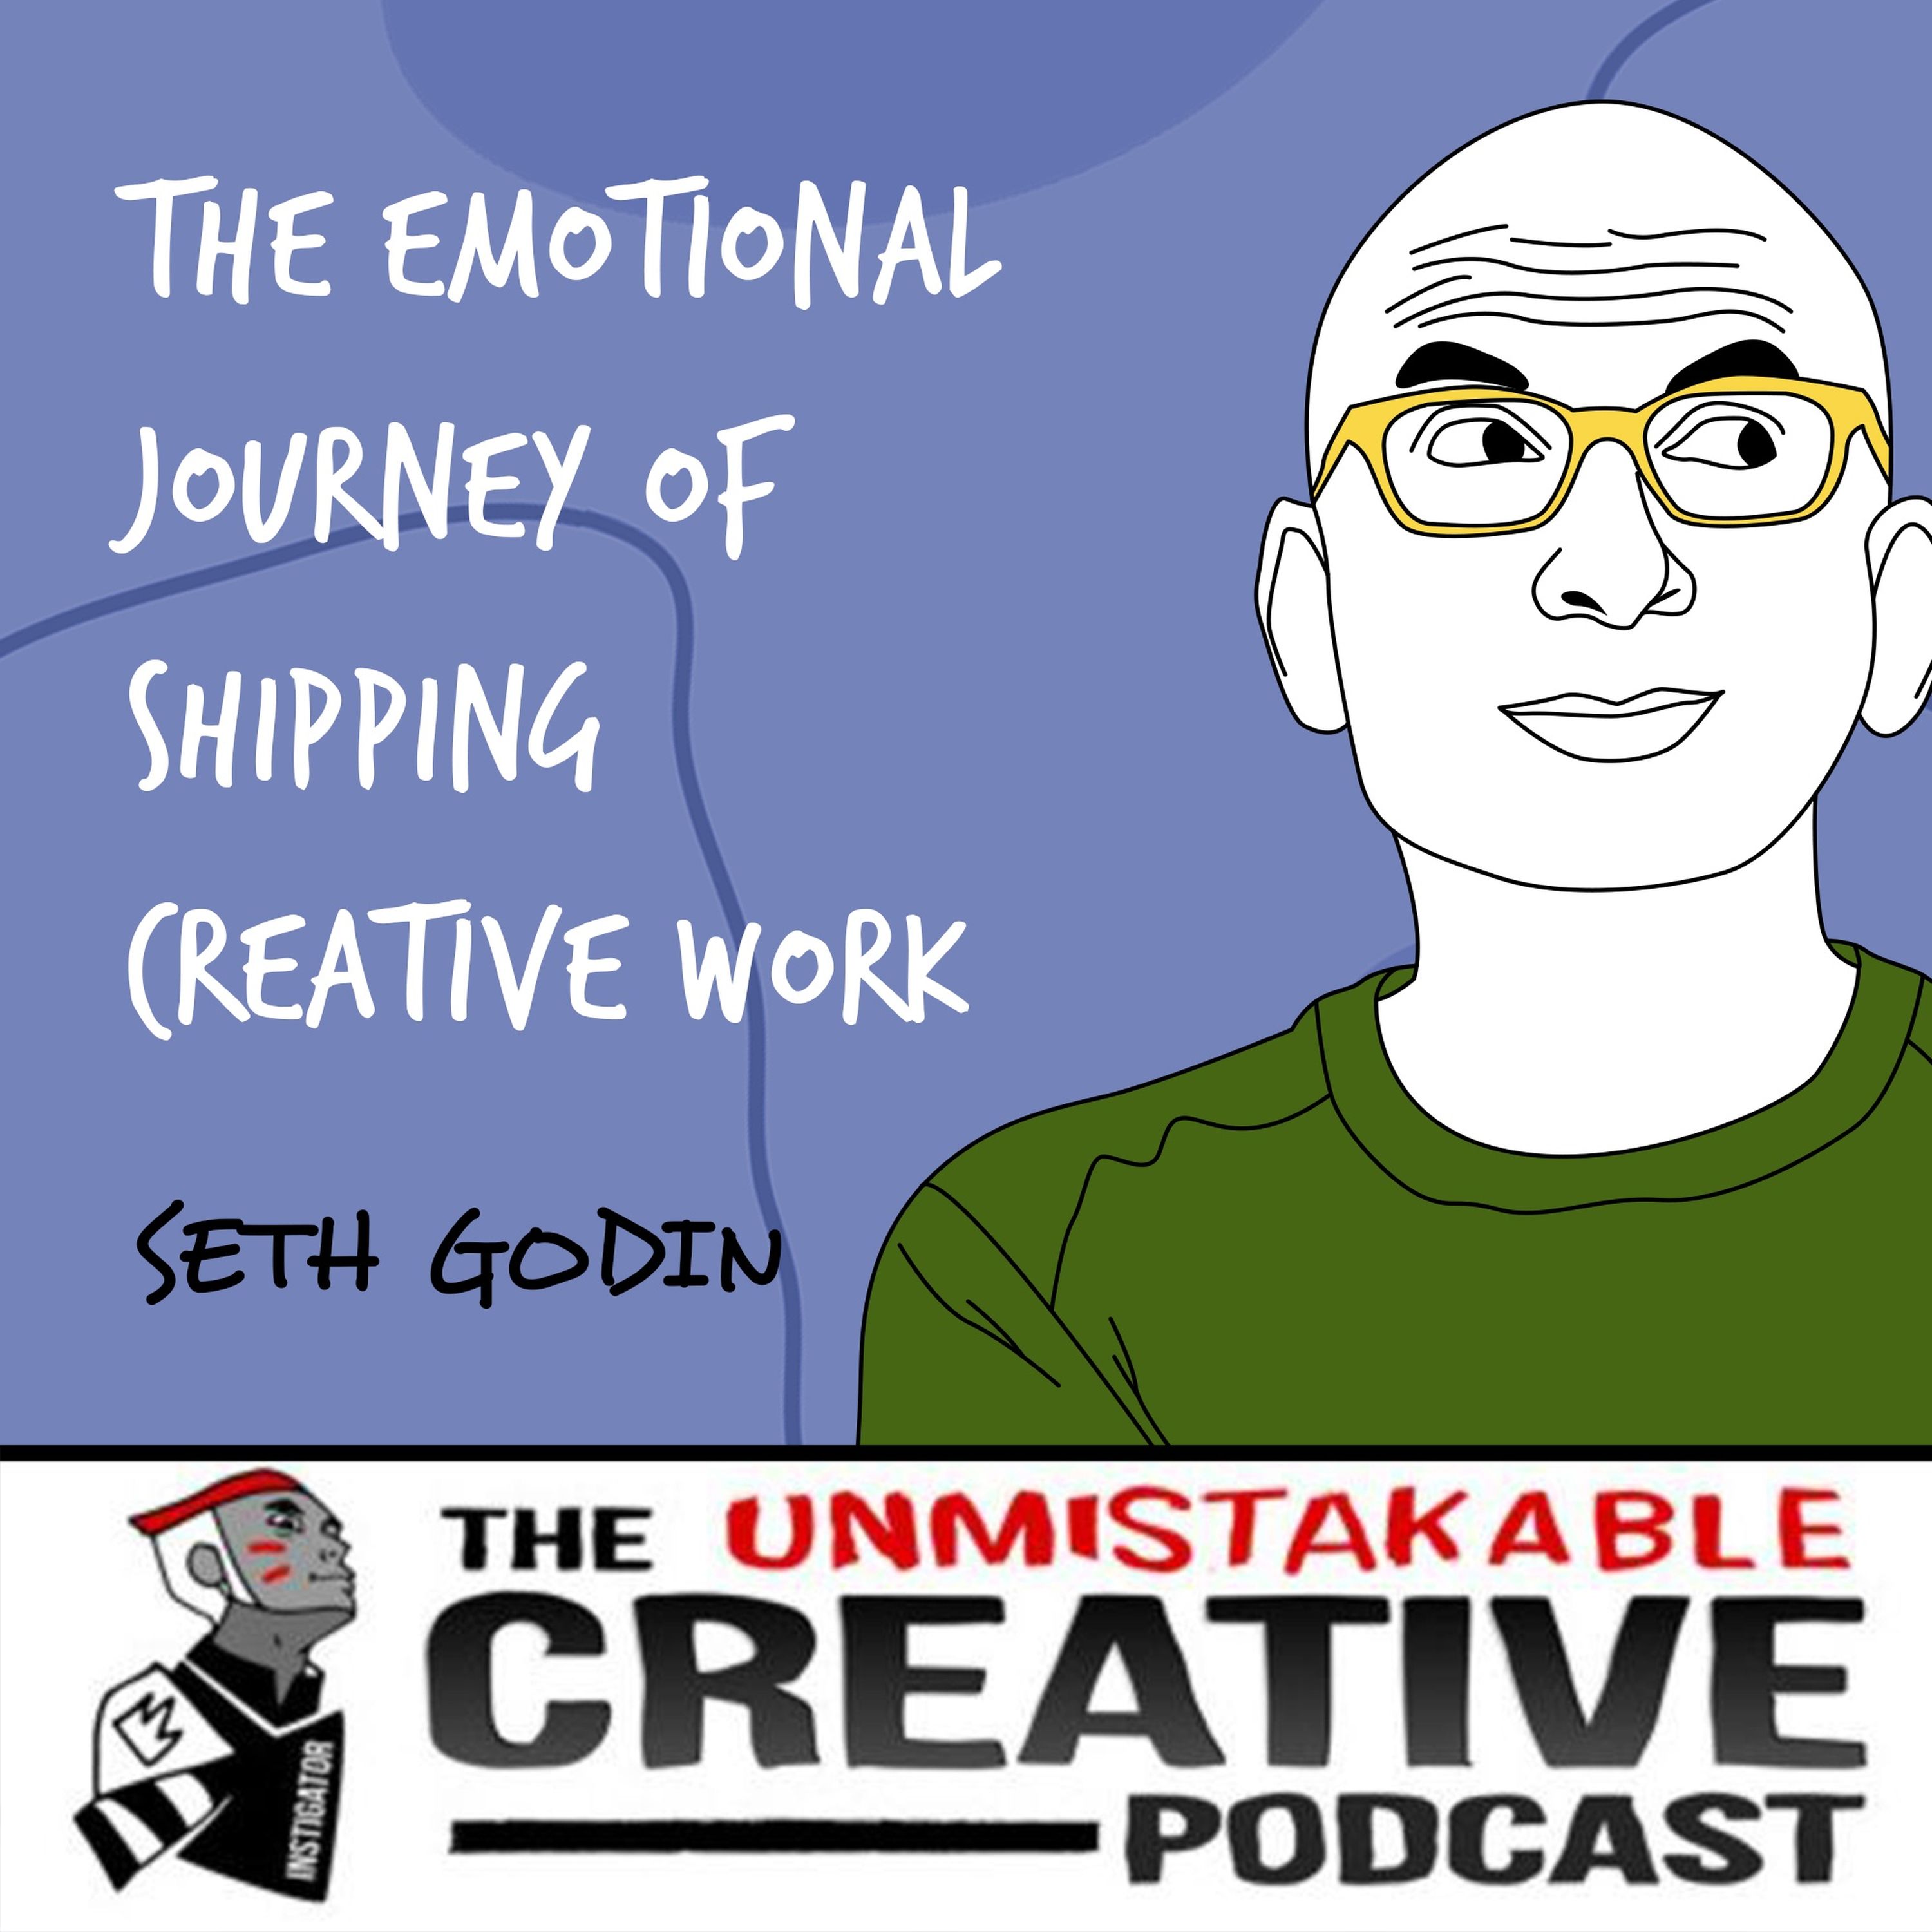 Seth Godin | The Emotional Journey of Shipping Creative Work Image